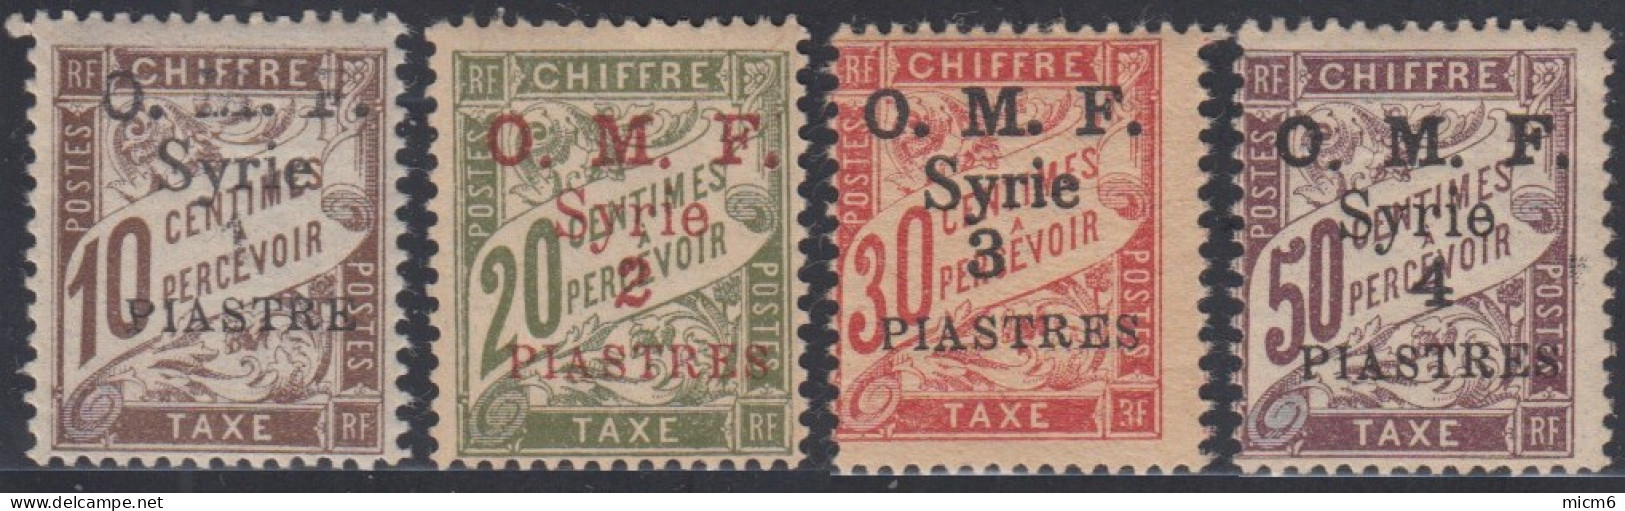 Syrie 1919-1922 (Occupation Française) - Timbres-taxe N° 05 à 8 (YT) N° 5 à 8 (AM) Neufs **. - Segnatasse